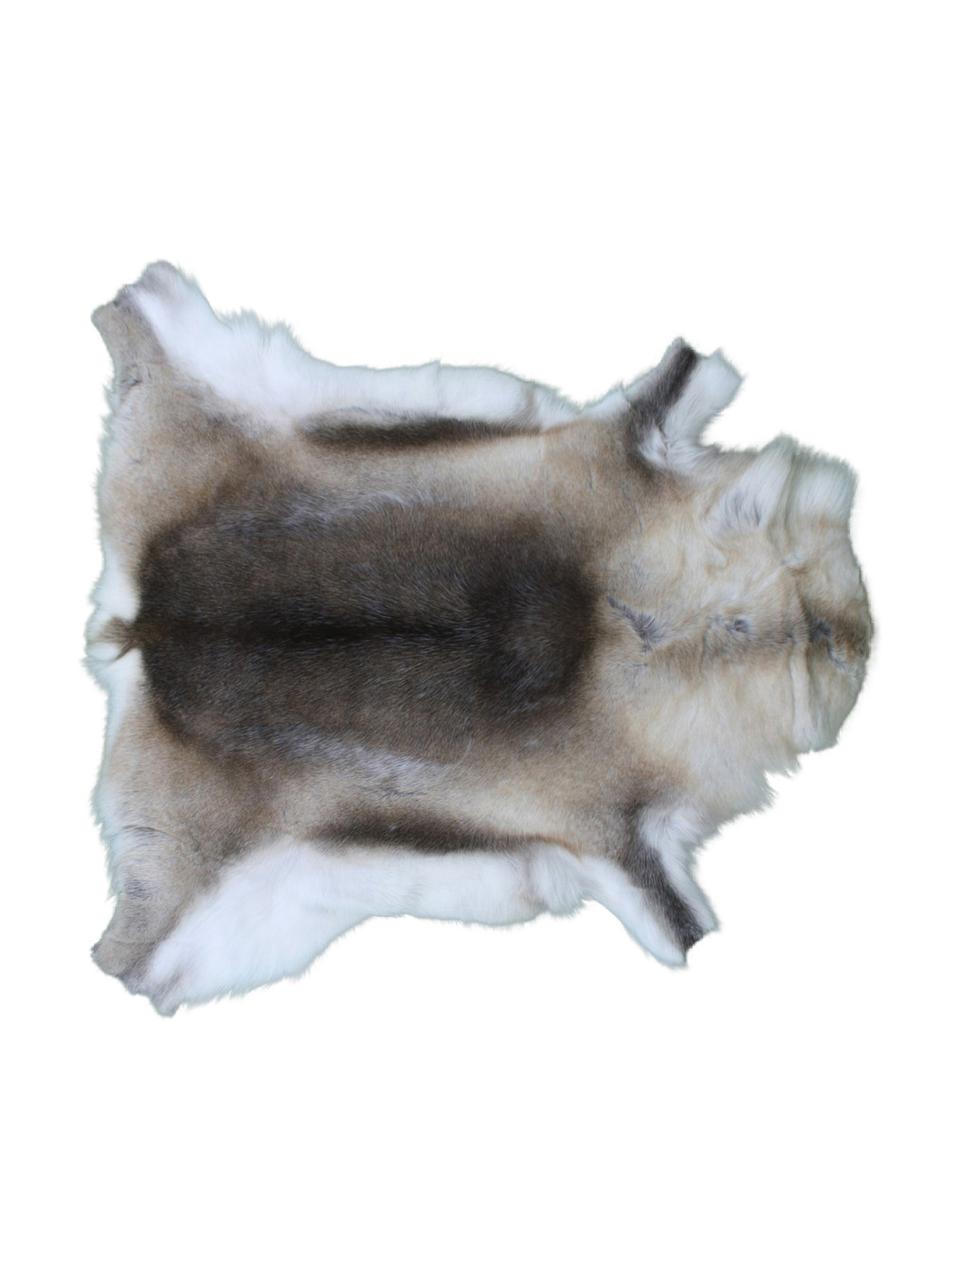 Dywan ze skóry renifera Dobri, Skóra renifera, Odcienie brązowego, biały, Unikatowa skóra z renifera 198, 75 x 115 cm